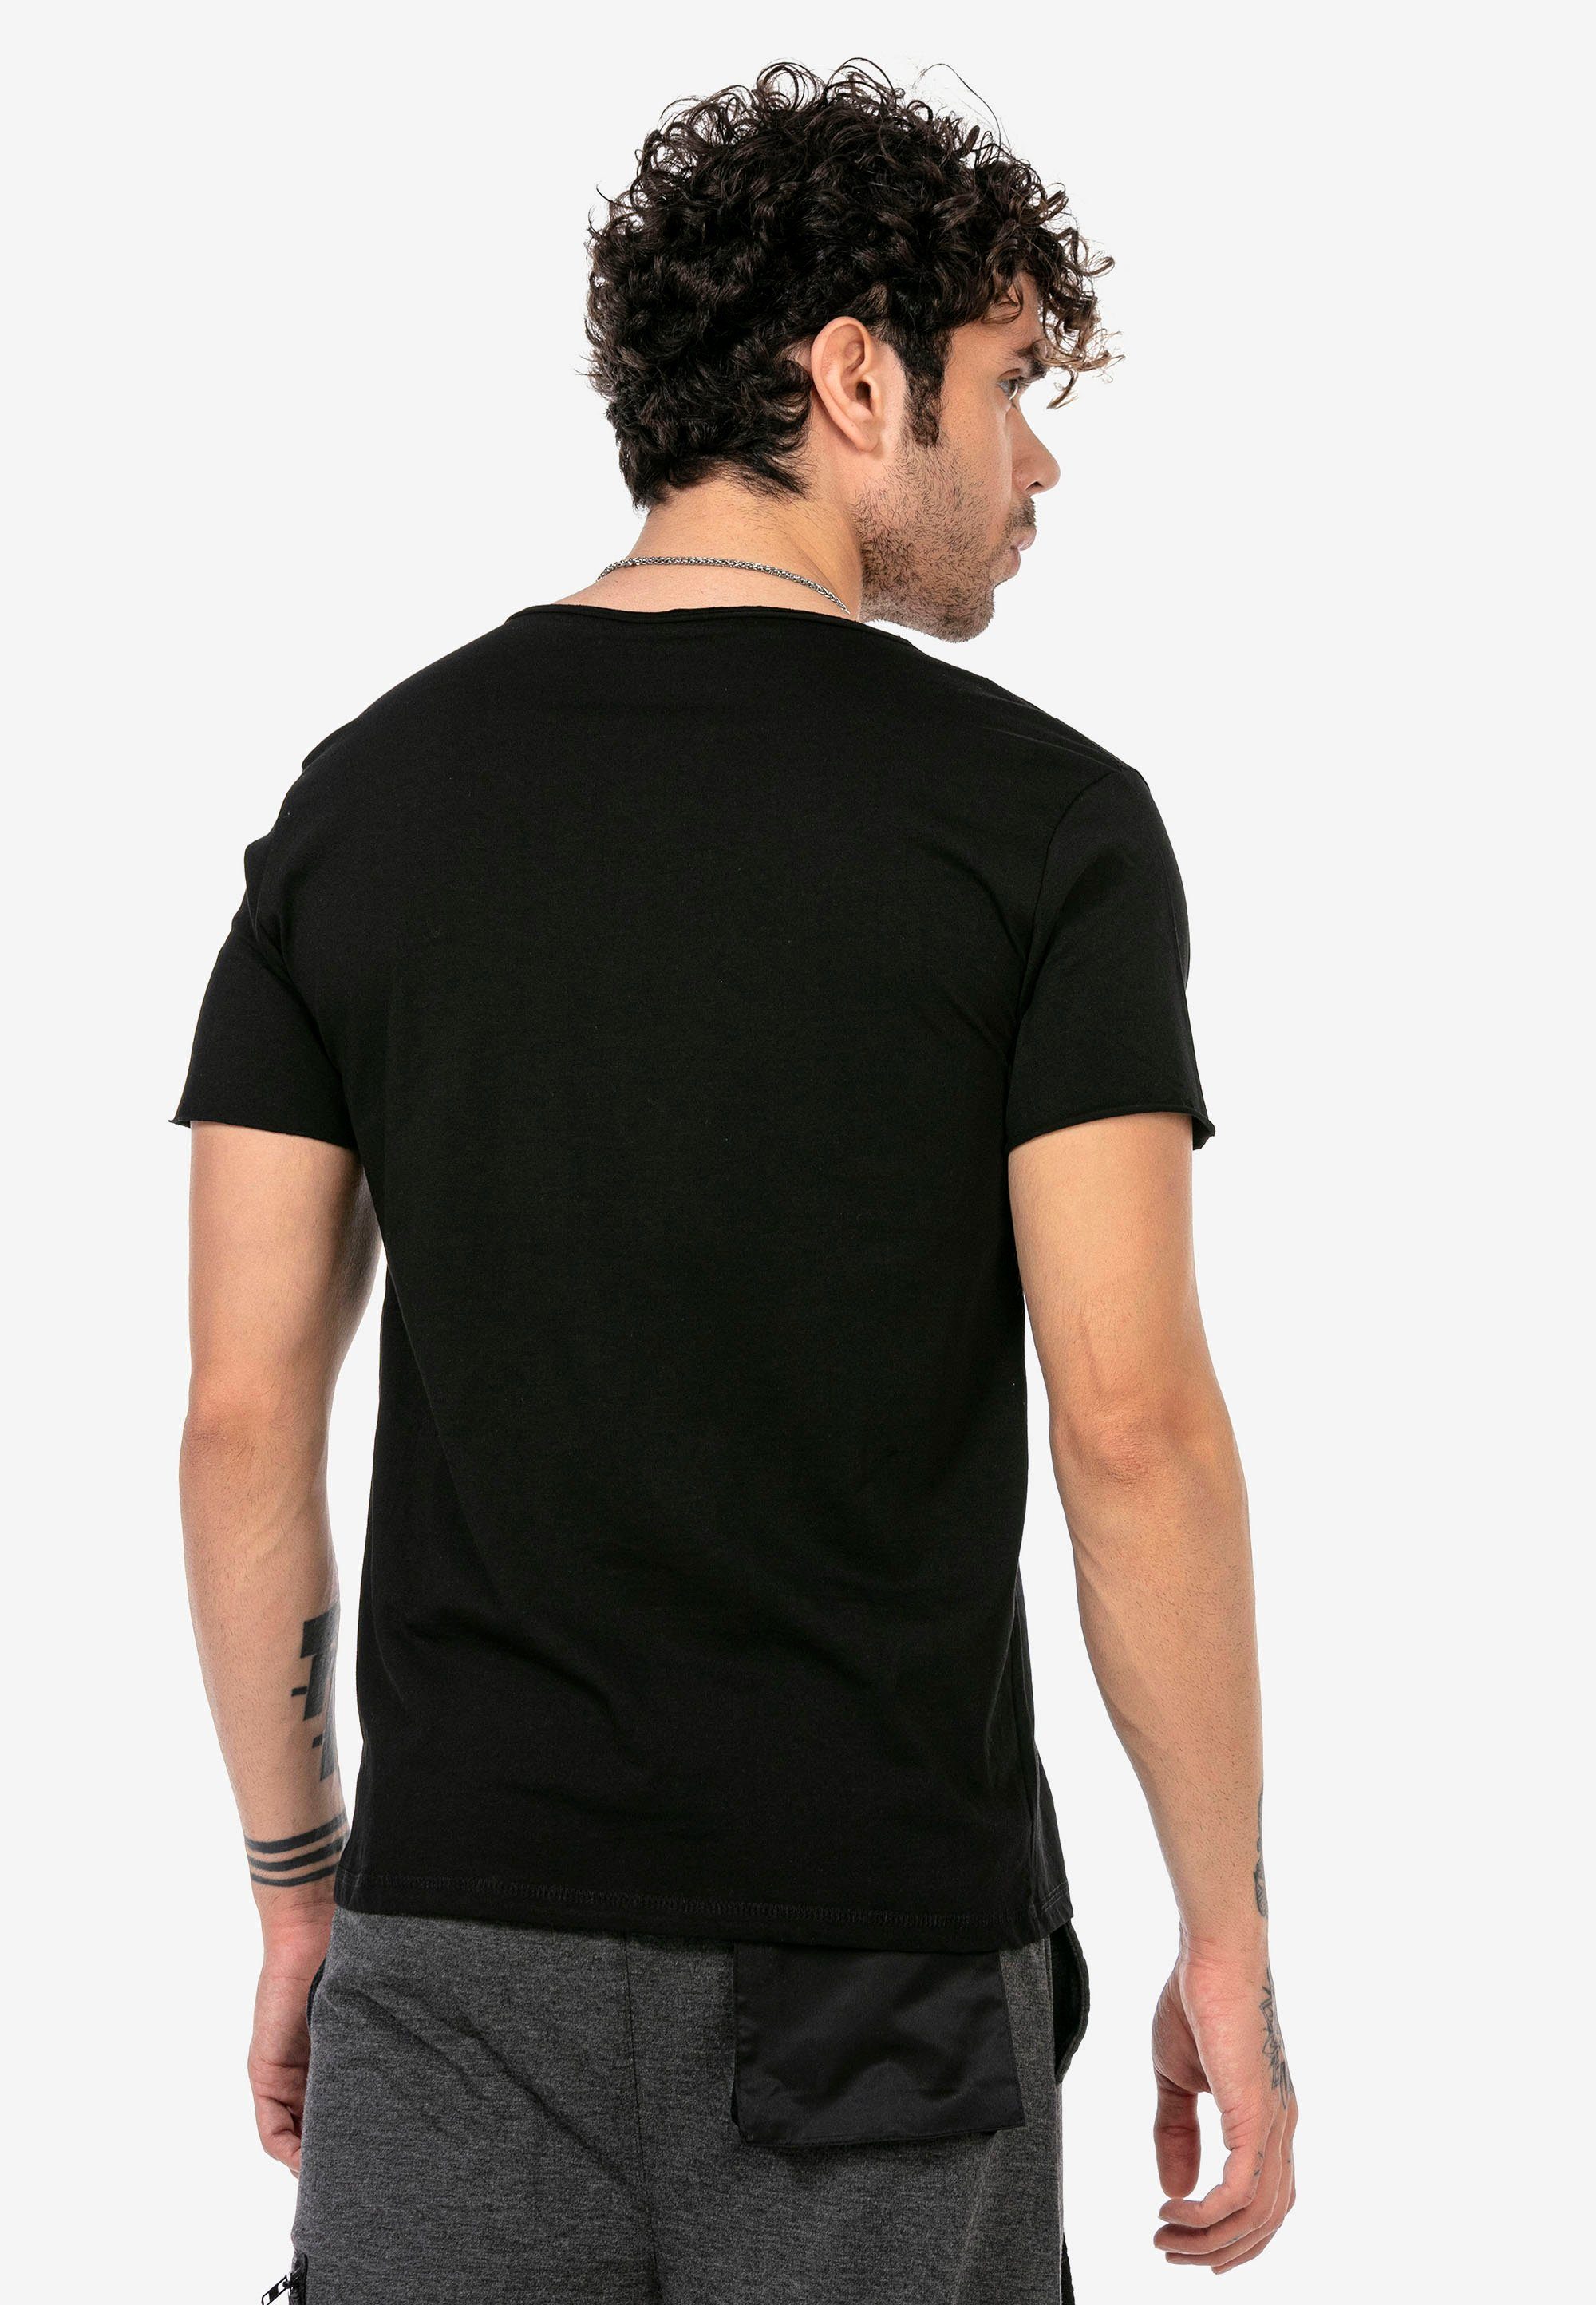 Columbia in T-Shirt schwarz schlichtem Design RedBridge